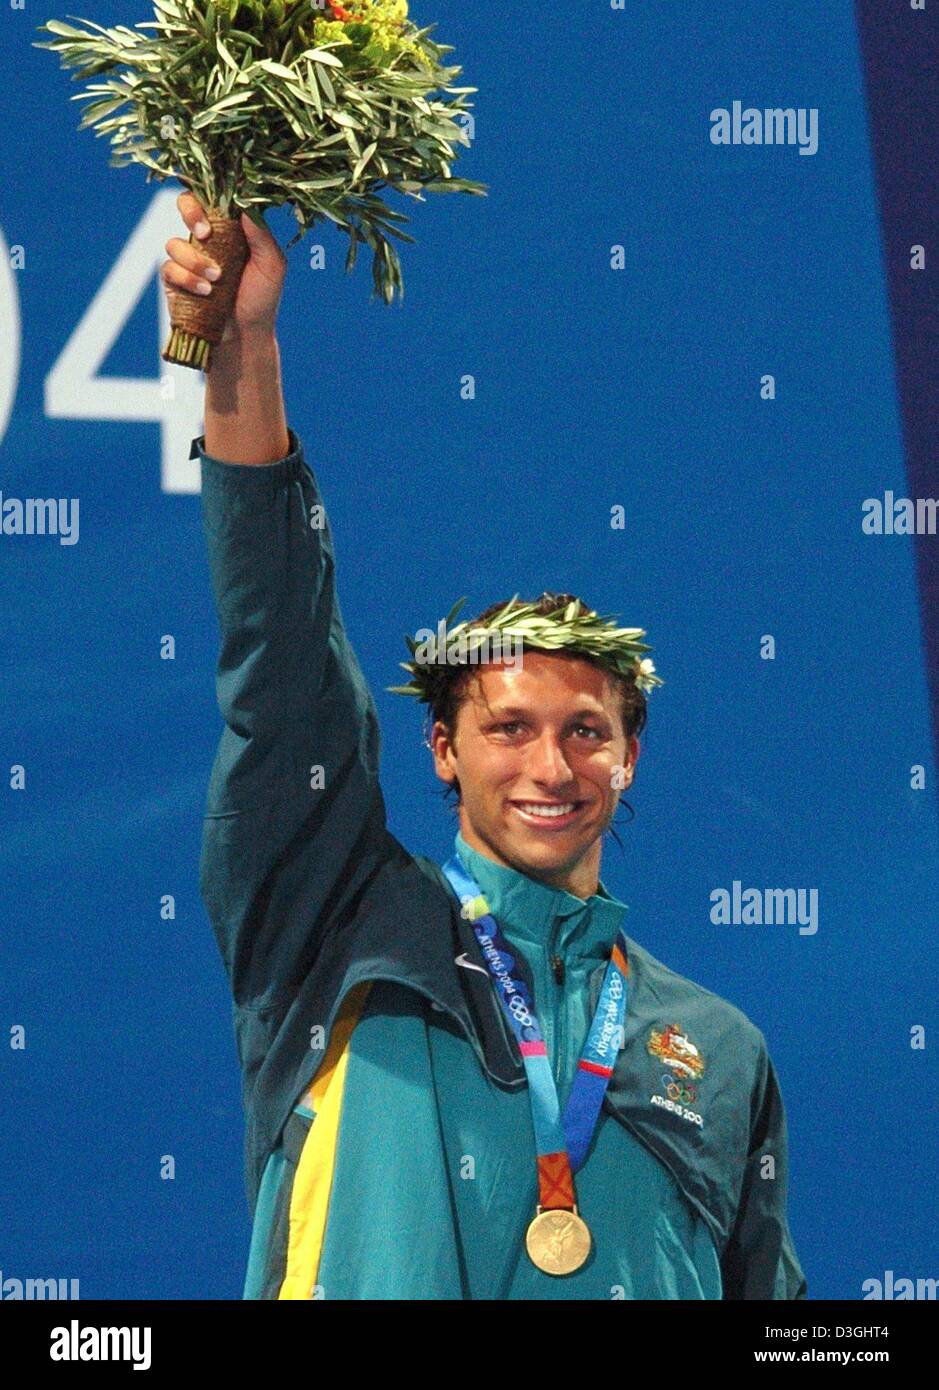 (Dpa) - australischer Schwimmer Ian Thorpe bei der Siegerehrung mit der Goldmedaille er die Herren 400m Freistil Finale bei den Olympischen Aquatic Centre in Athen, Samstag, 14. August 2004 gewann. Stockfoto